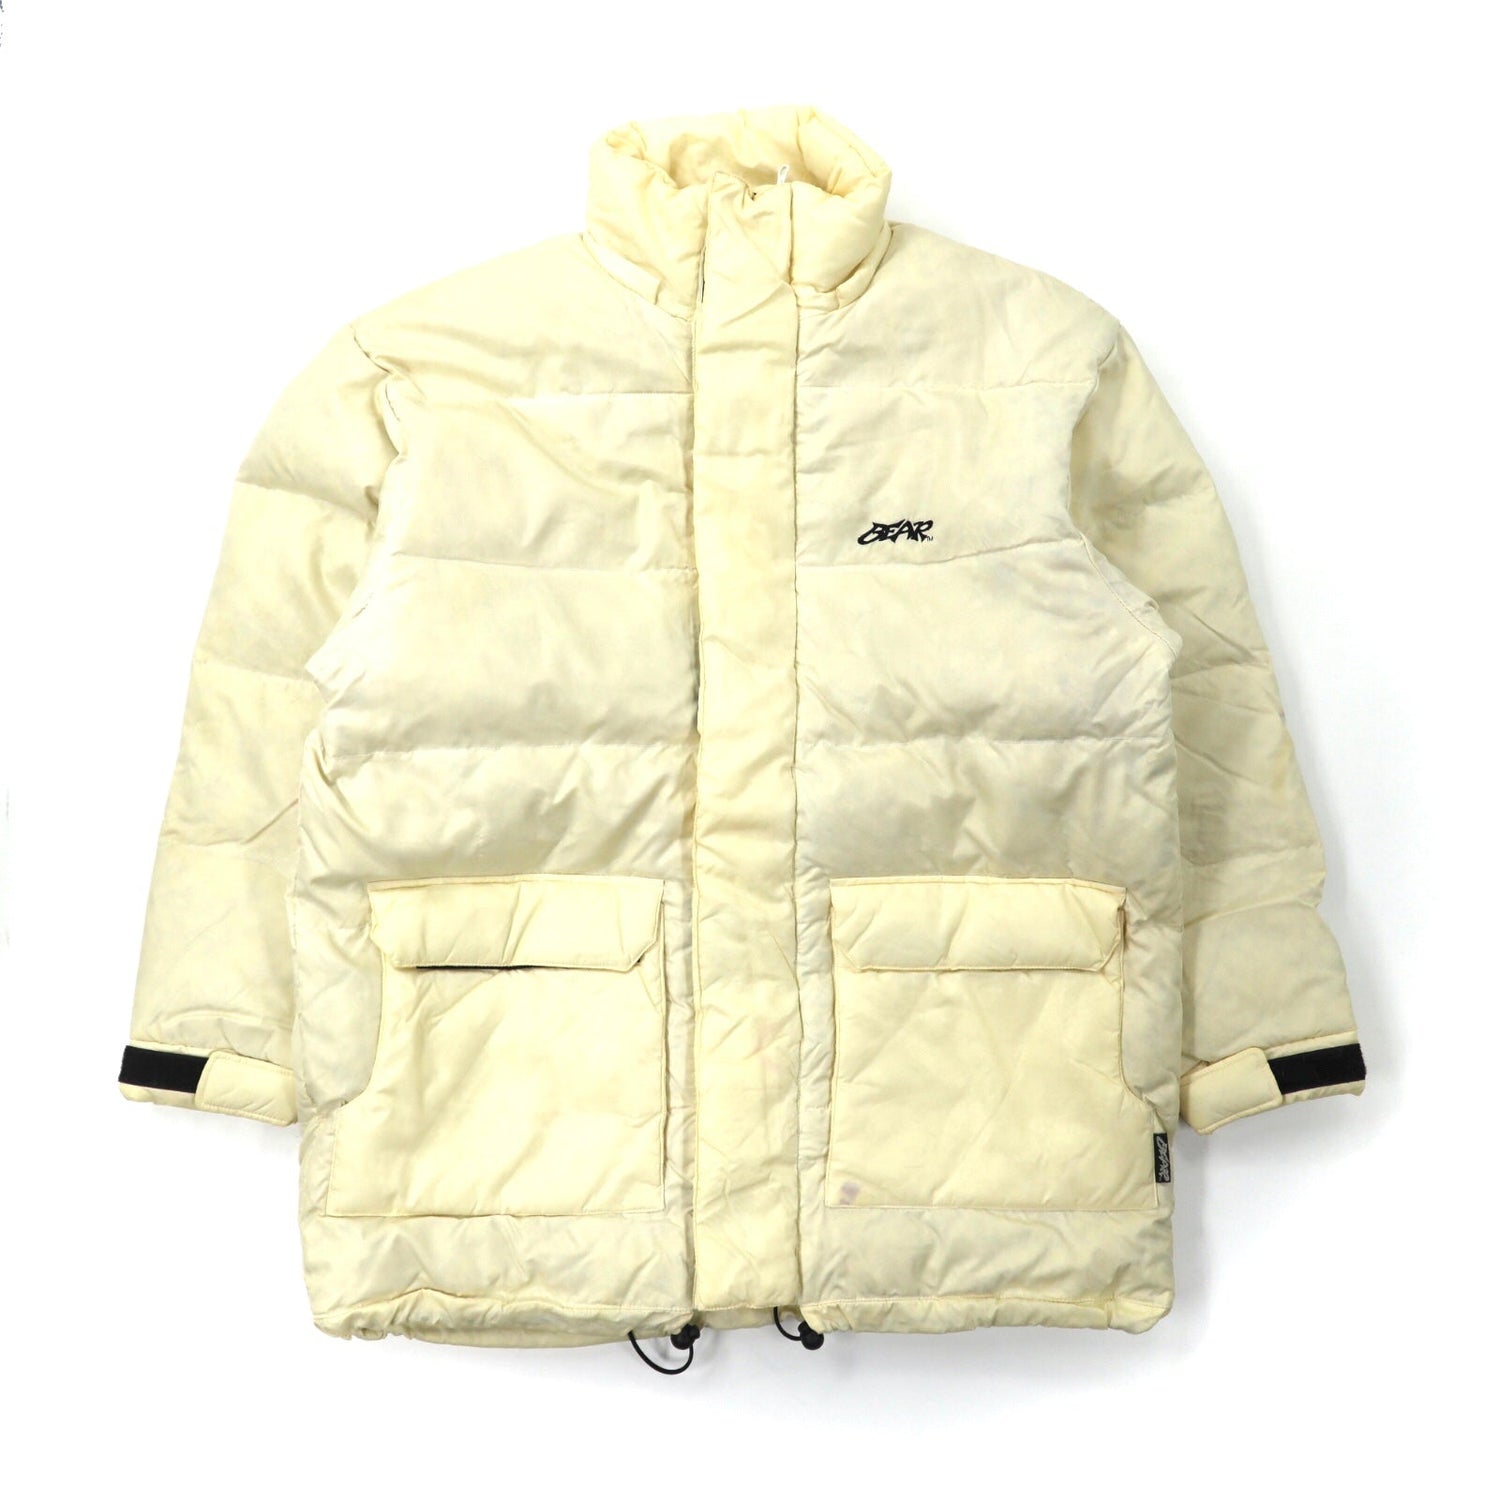 Bear USA Puffer Jacket M White Nylon Big Size Small Logo ...